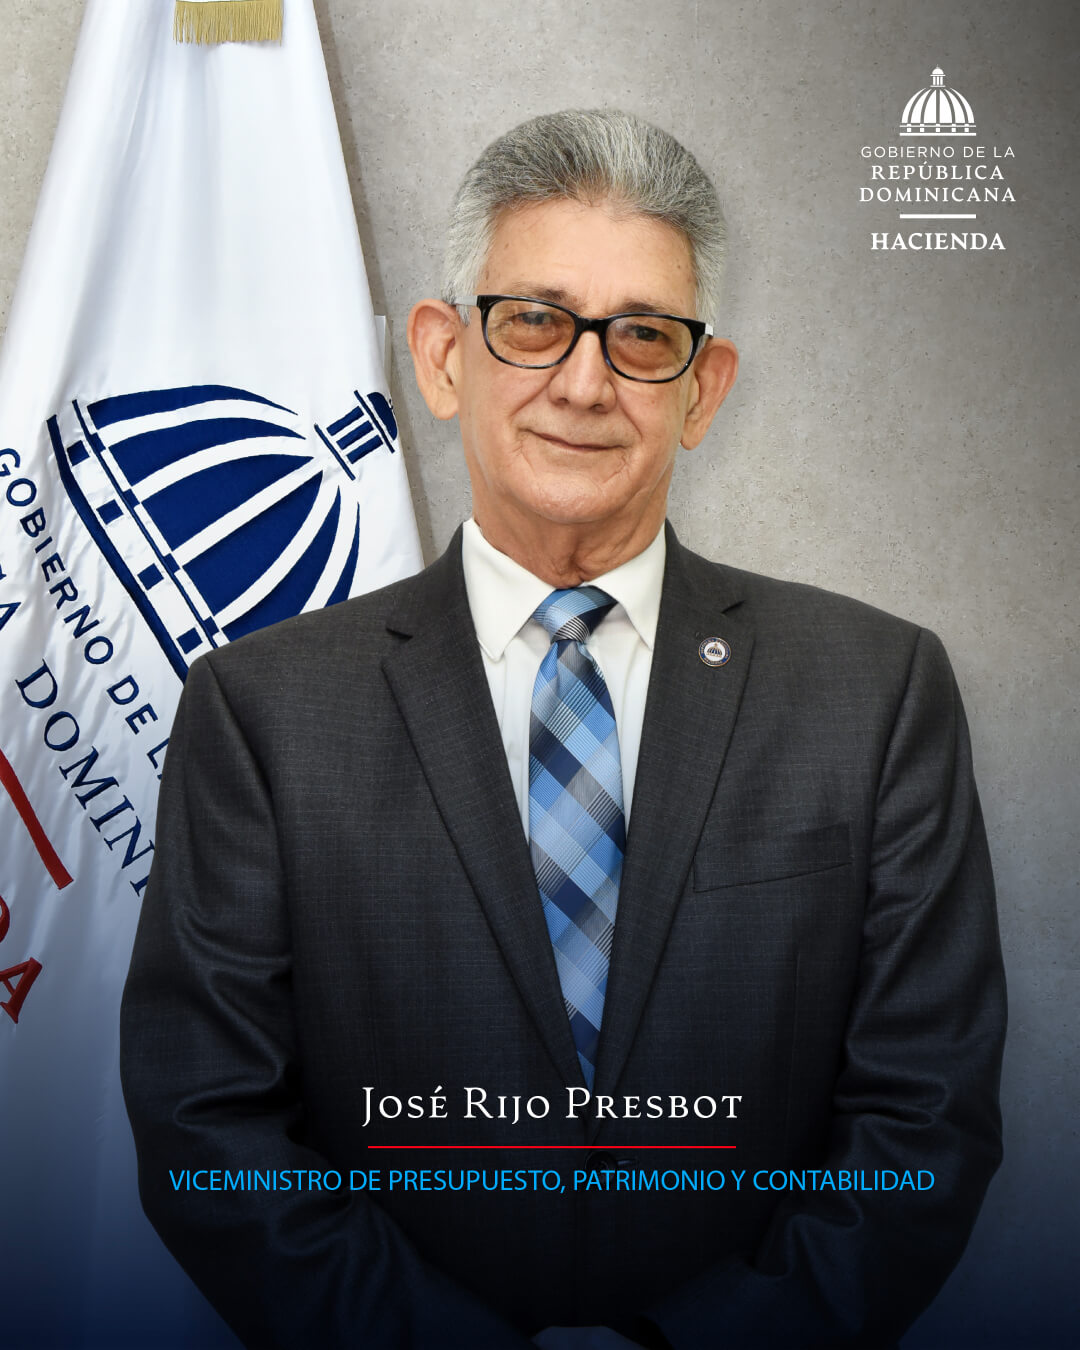 José Rijo Presbot, viceministro de Presupuesto, Patrimonio y Contabilidad